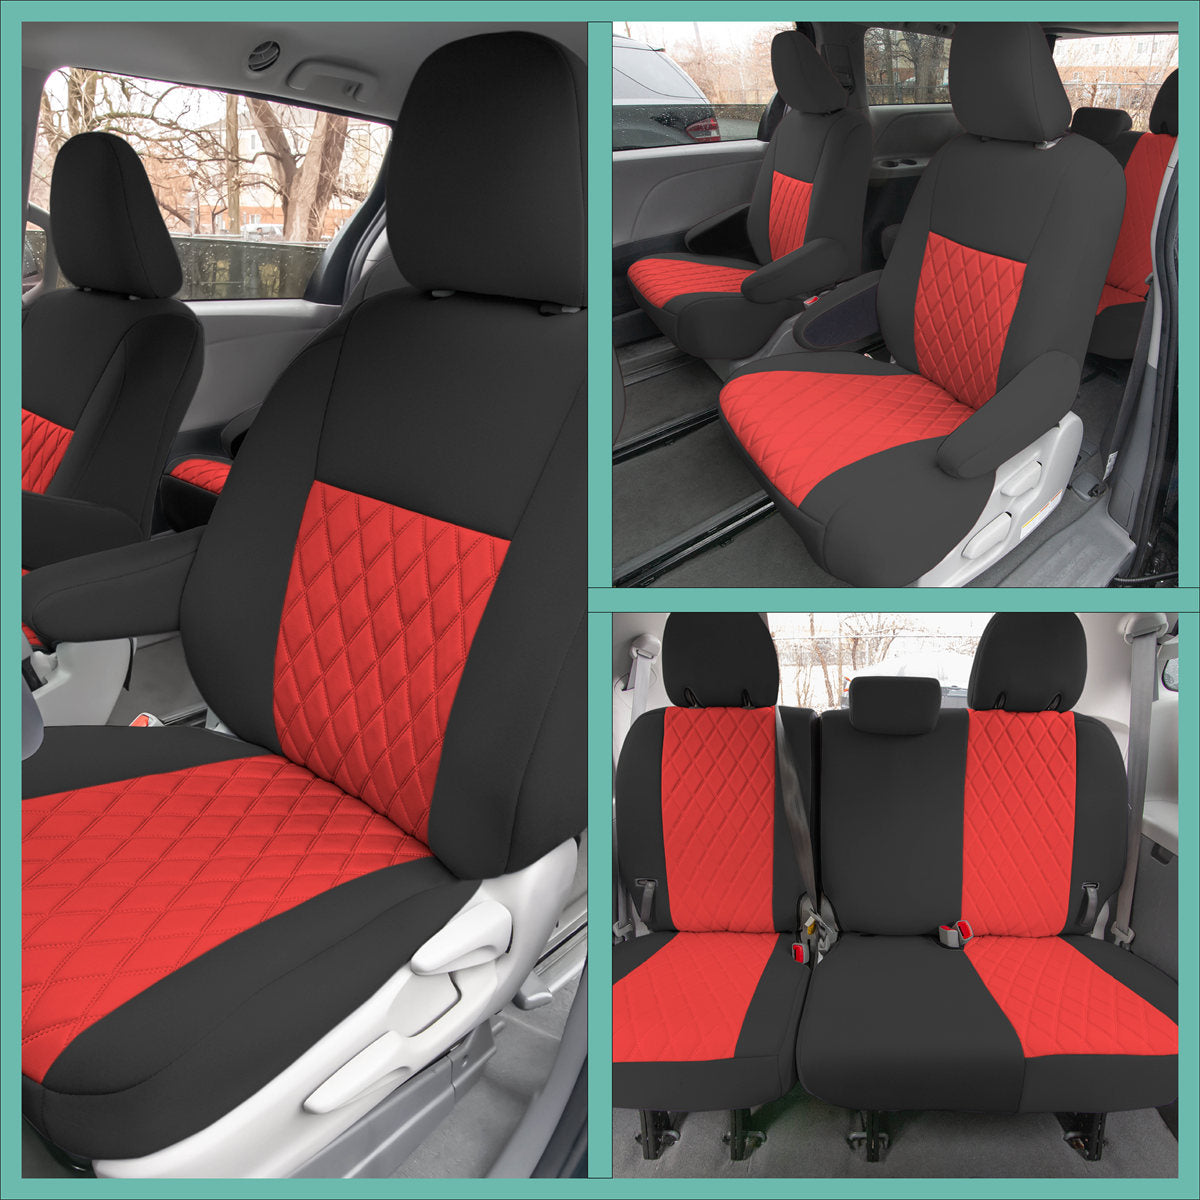 Toyota Sienna - 2011 - 2020 - Full Set Seat Covers - Red Ultraflex Neoprene